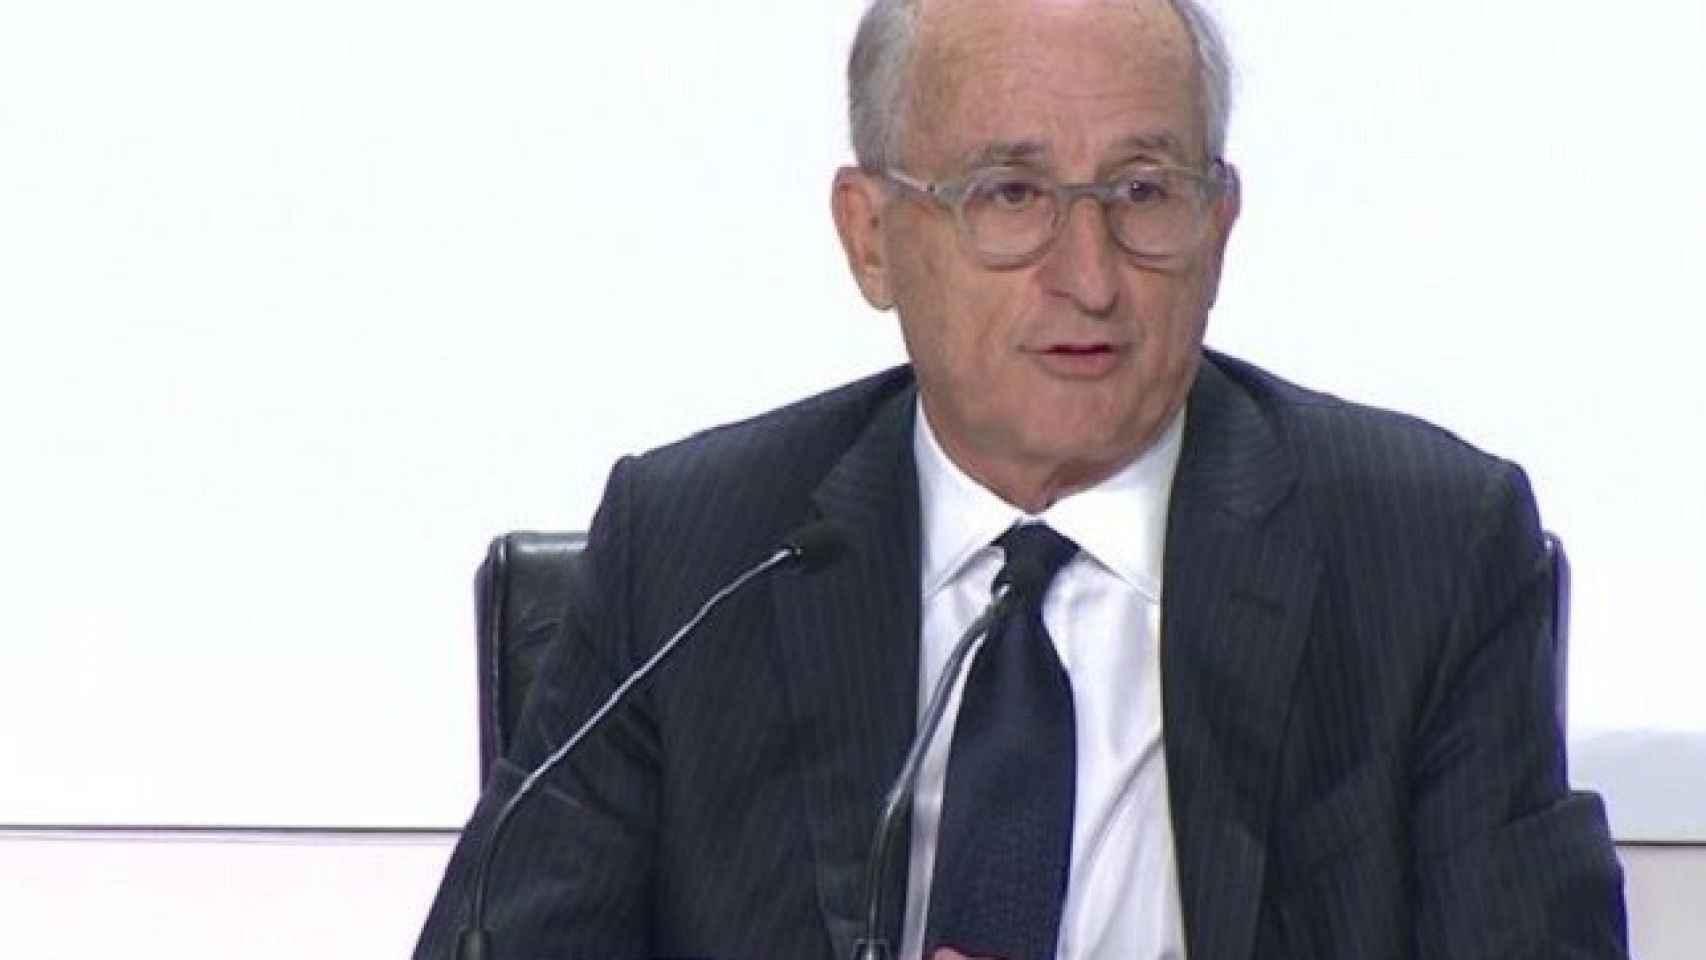 El presidente de Repsol, Antonio Brufau.